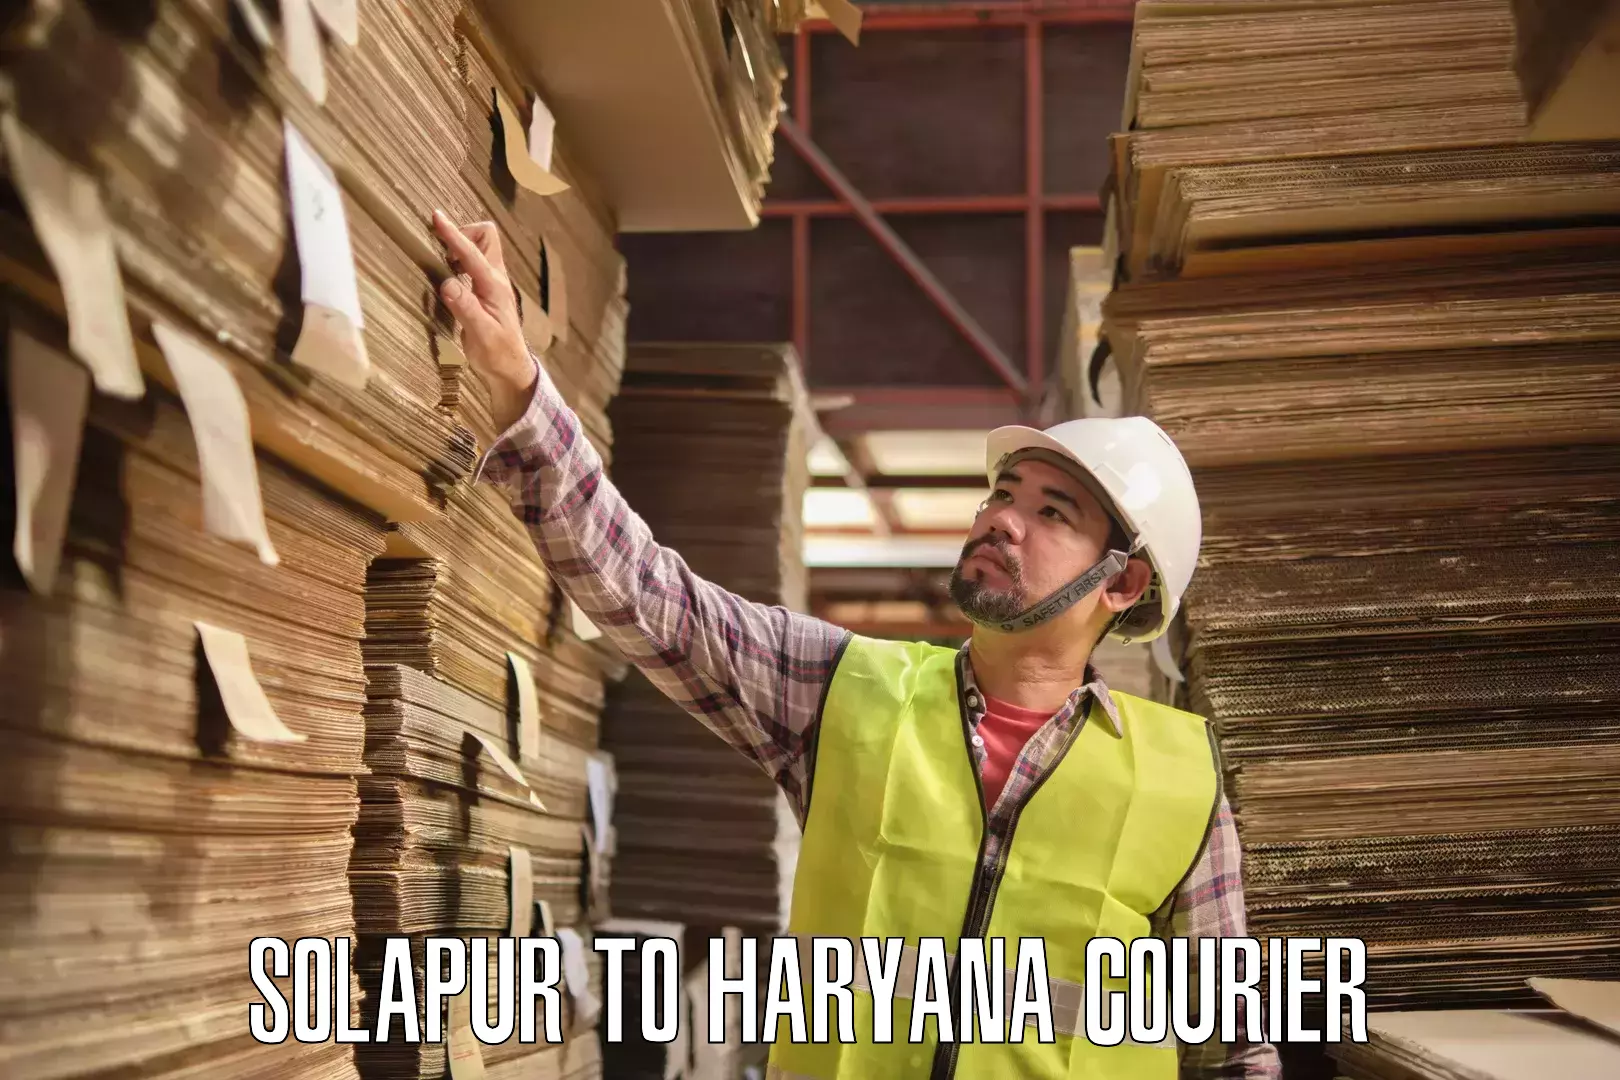 Package tracking Solapur to IIIT Sonepat